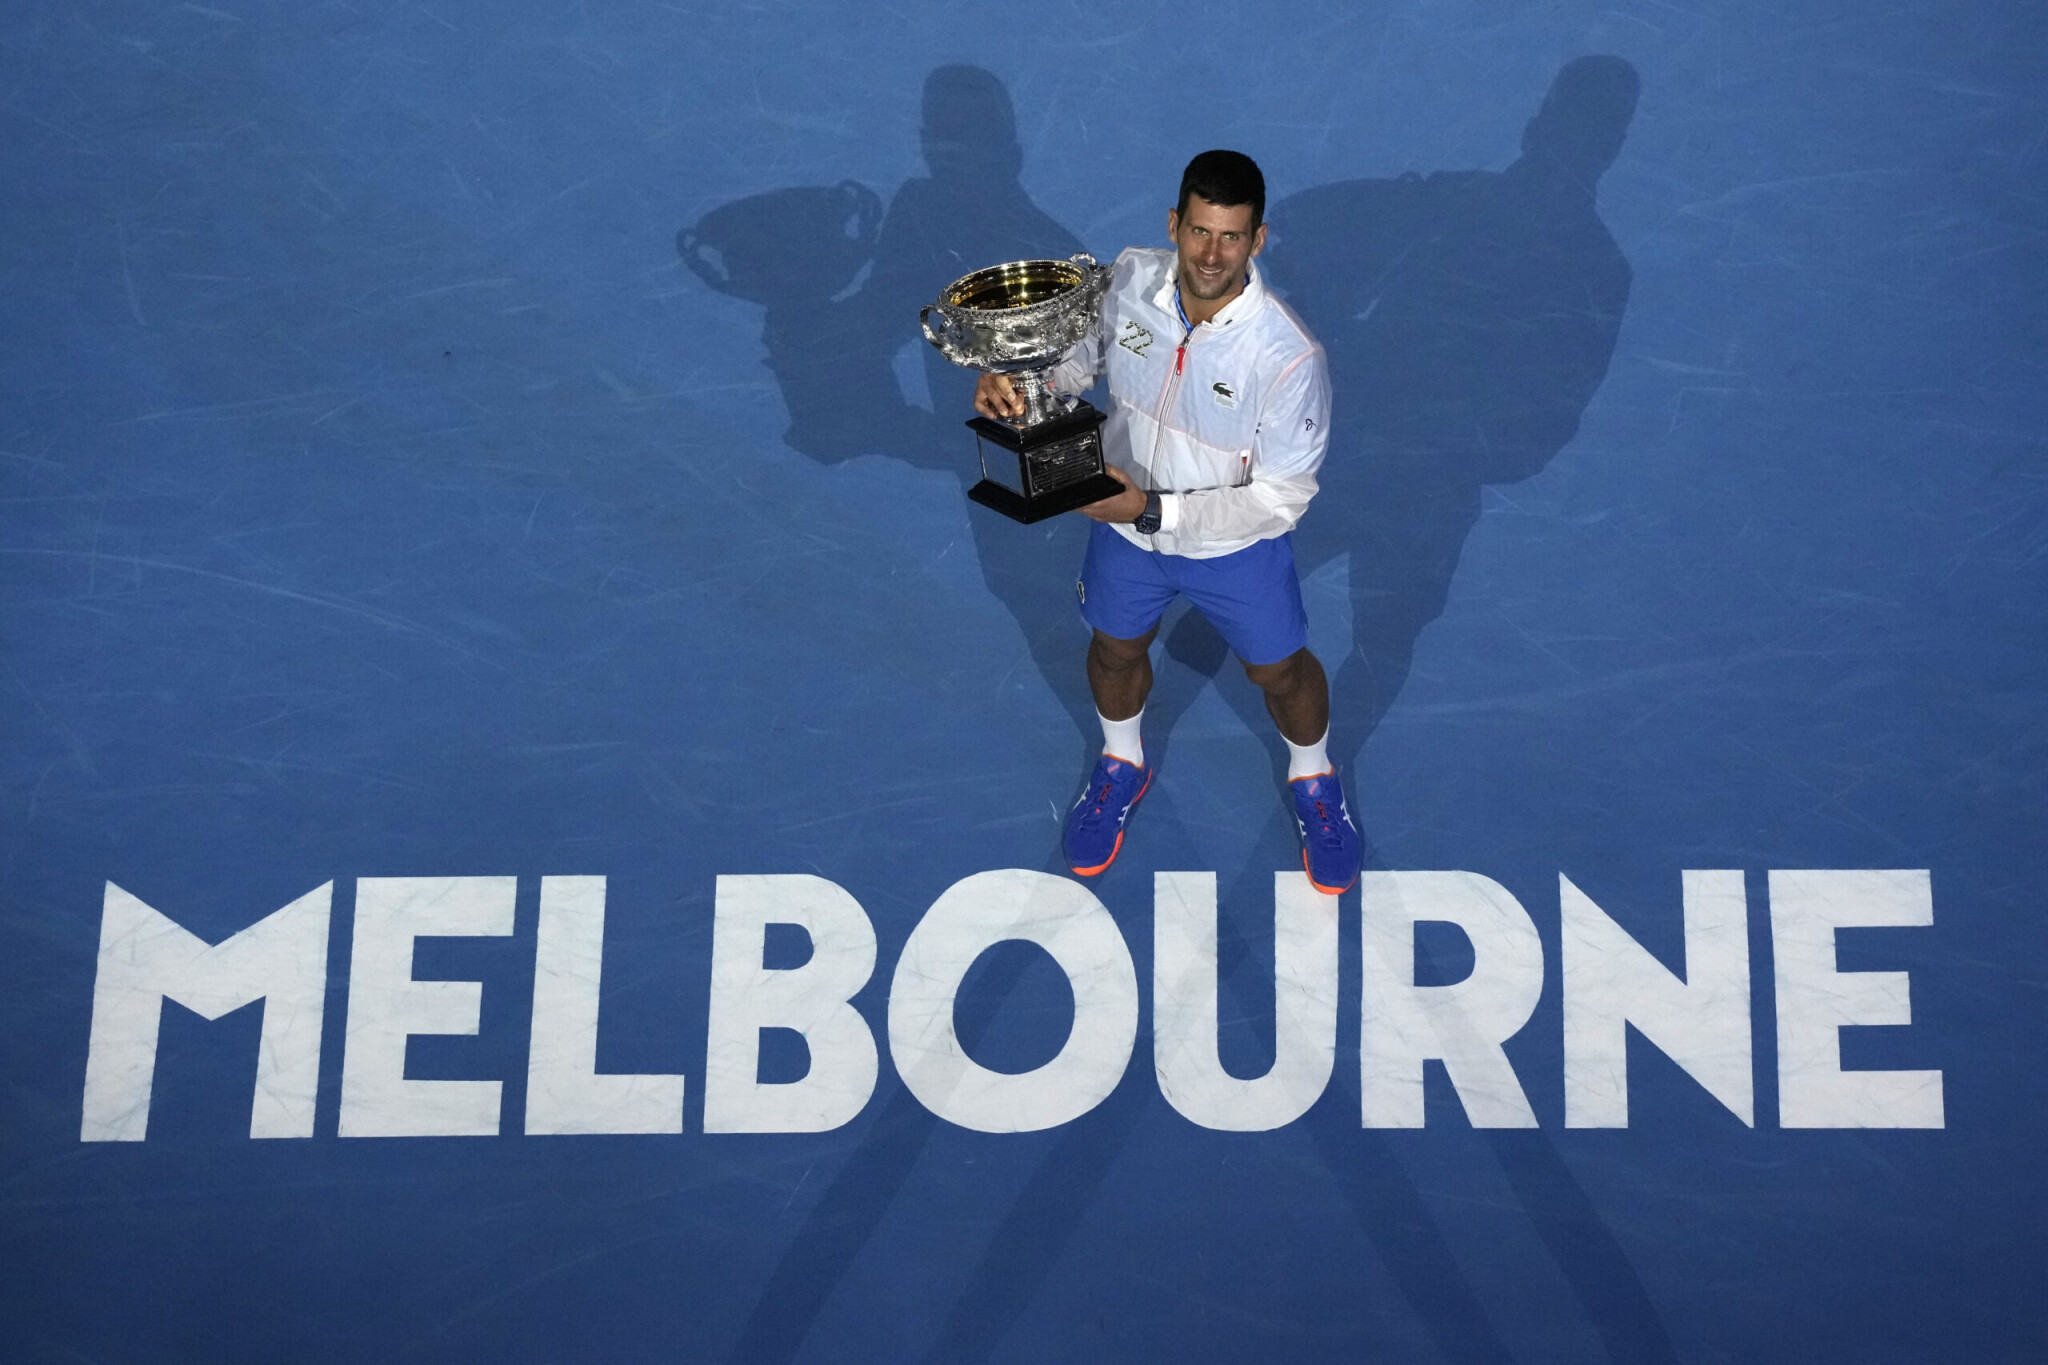 Djokovič víťazom Australian Open. S 22 grandslamovými titulmi vyrovnal Nadalov rekord